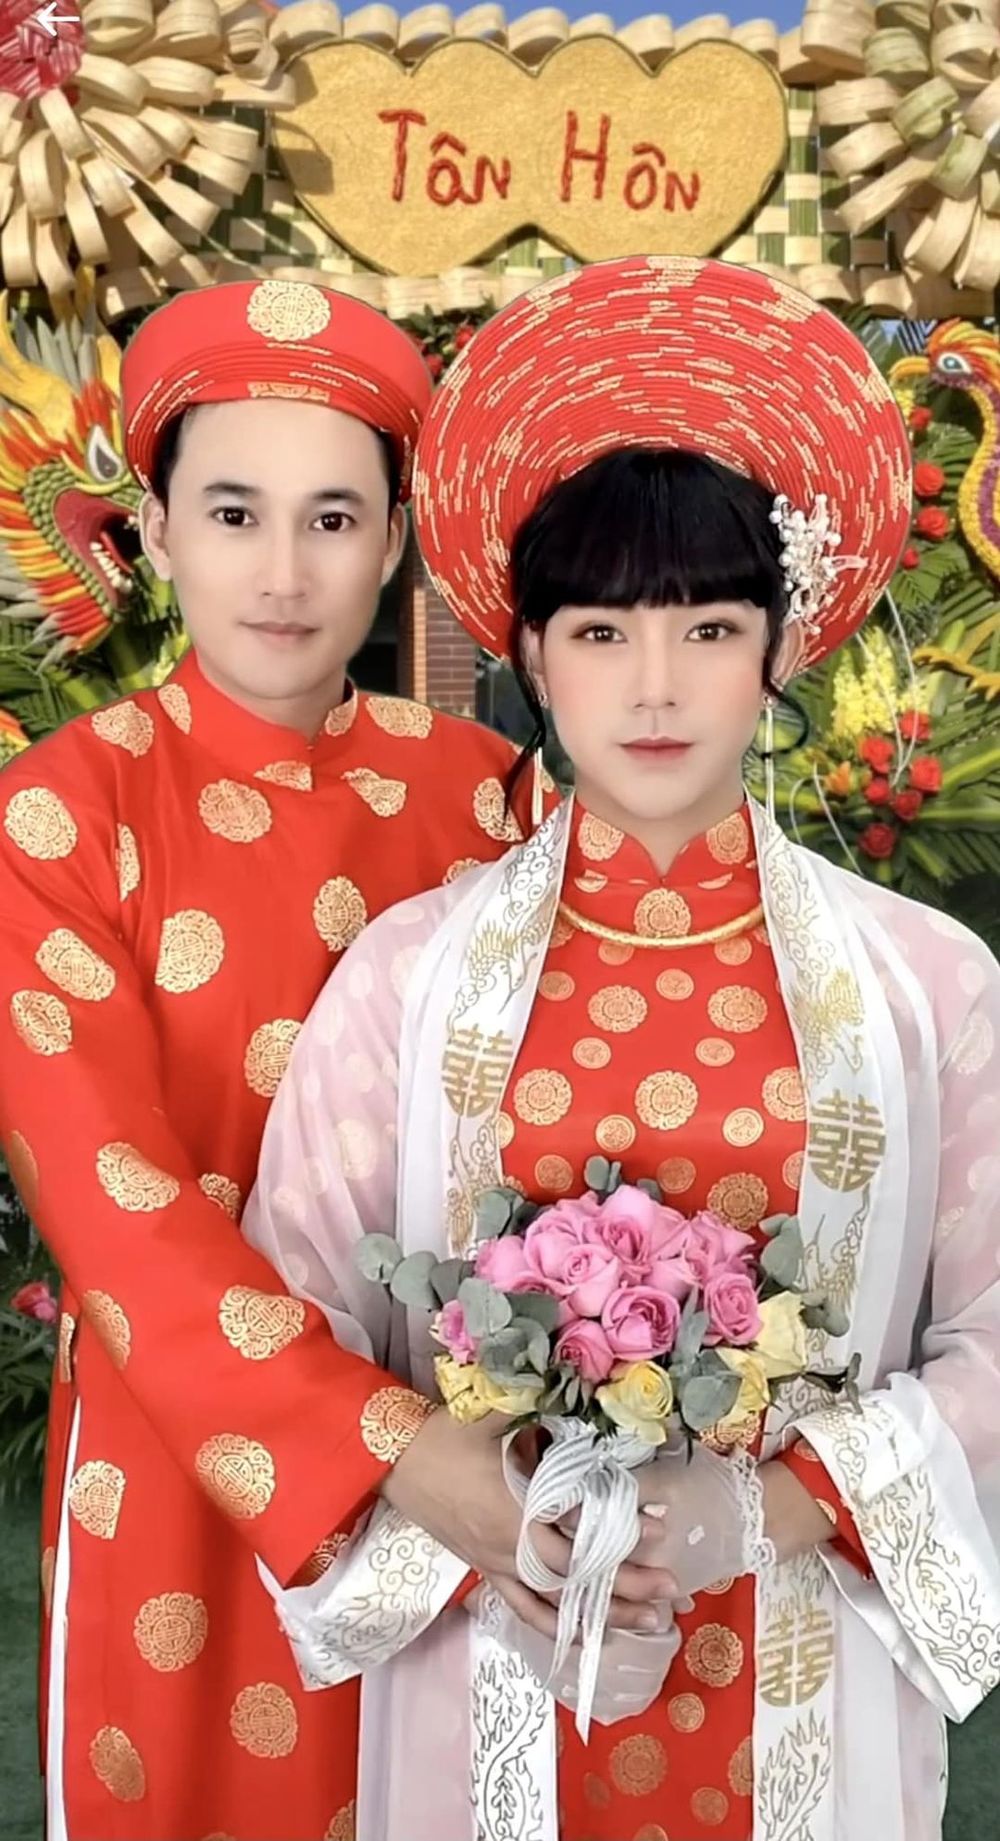 Diễn viên Hà Trí Quang làm lễ tân hôn online với bạn trai, sắp đón &#34;2 con ruột 100%&#34; - 1